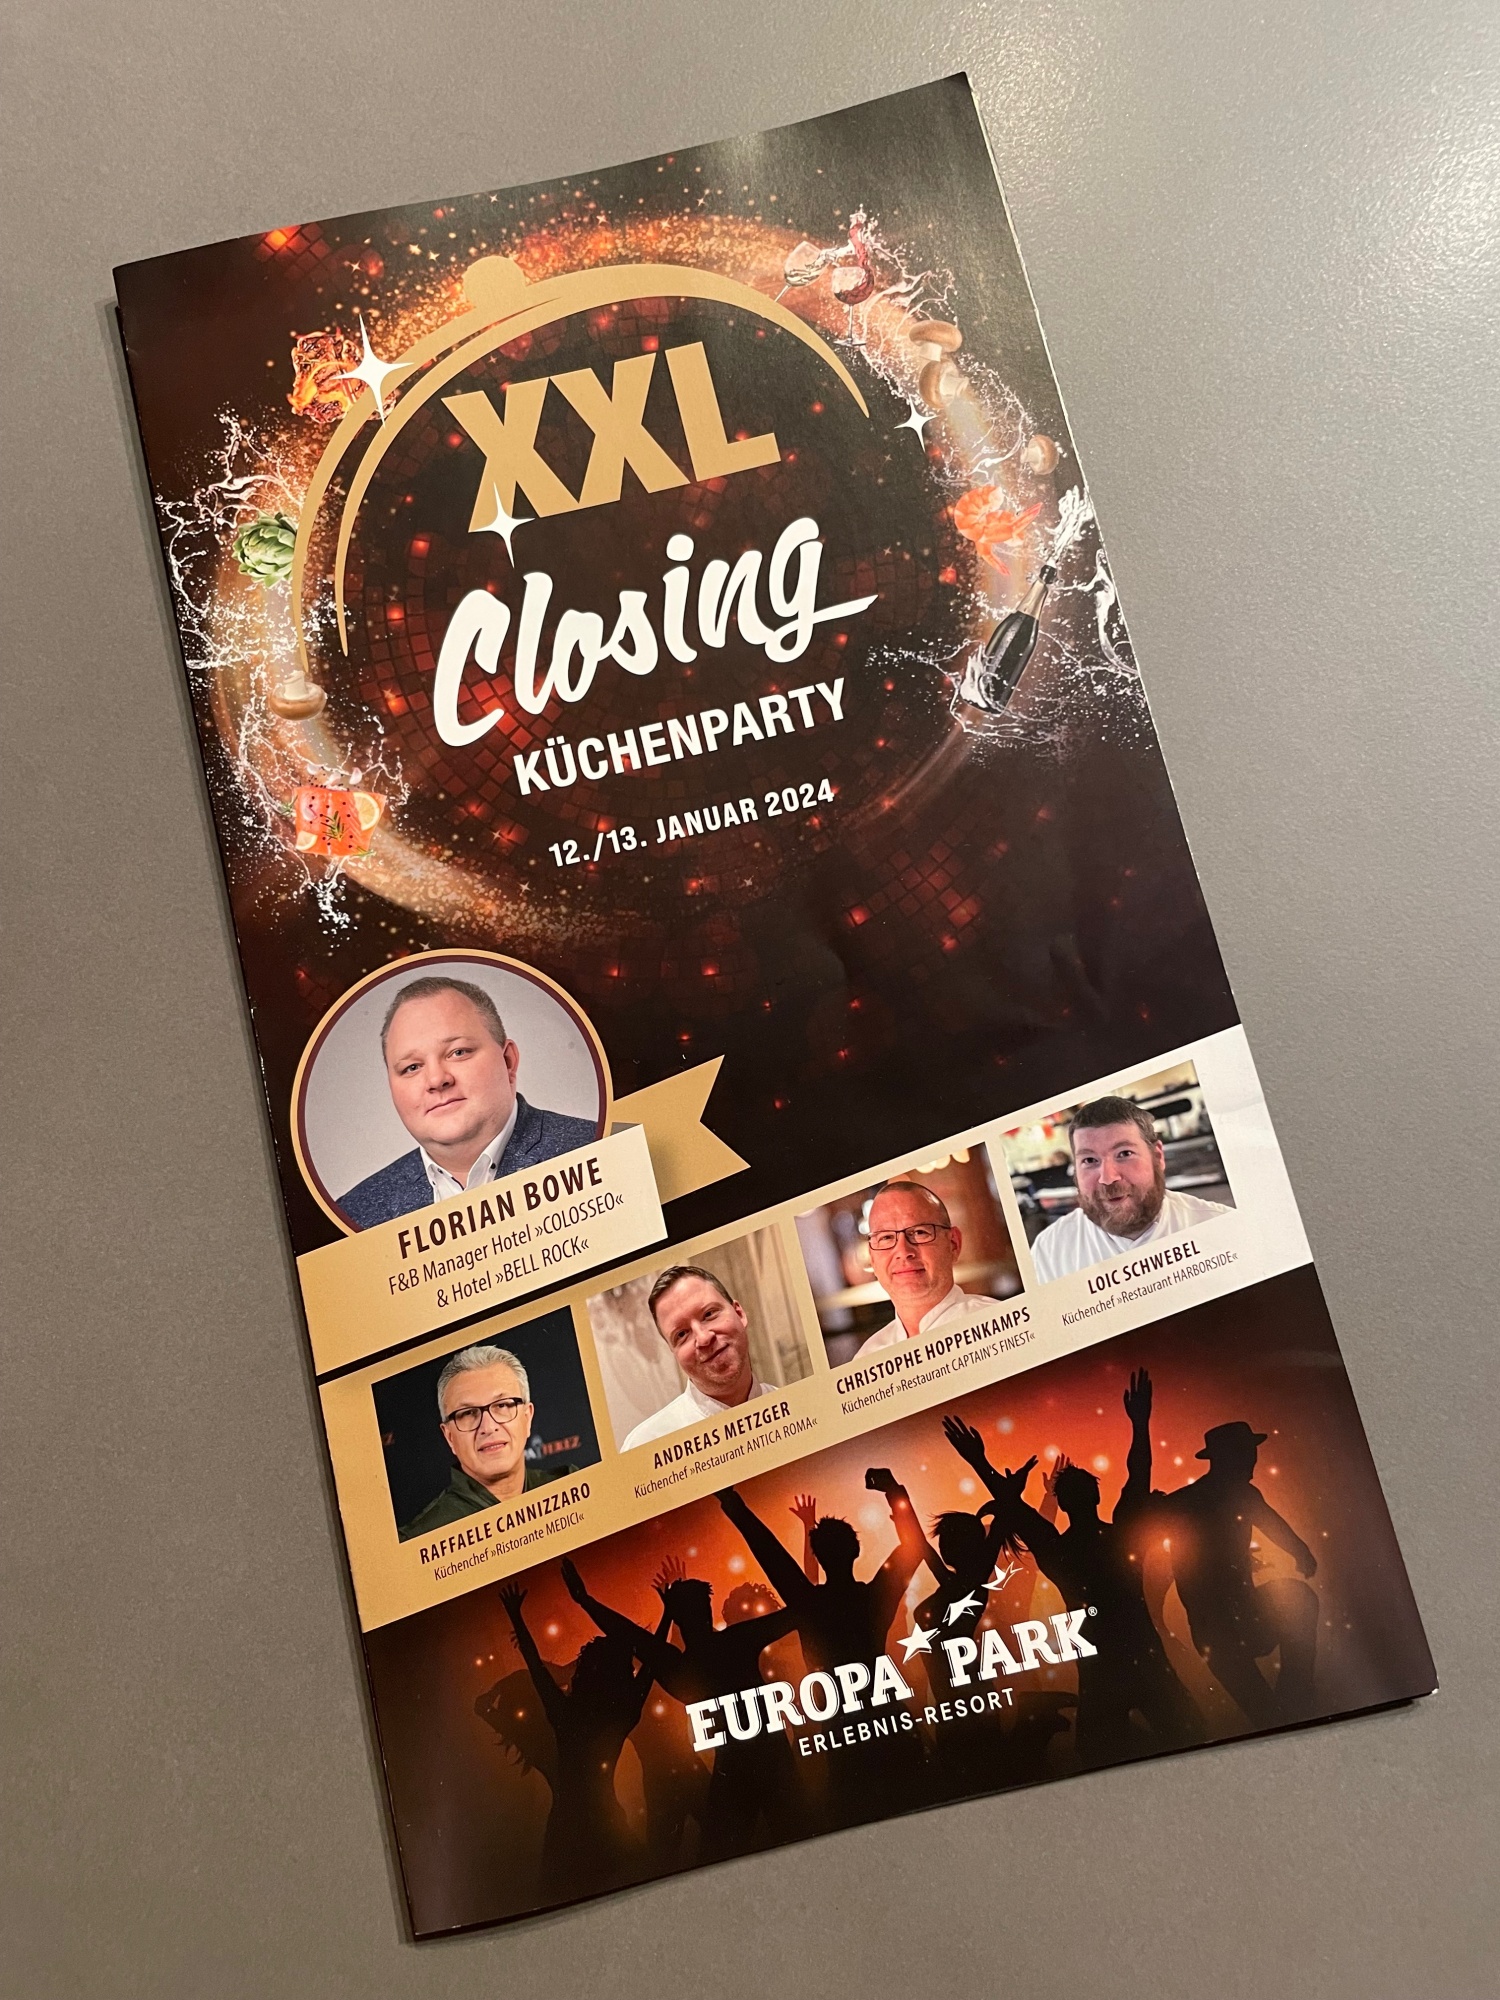 Europa-Park: XXL Closing Küchenparty mit Kerstin